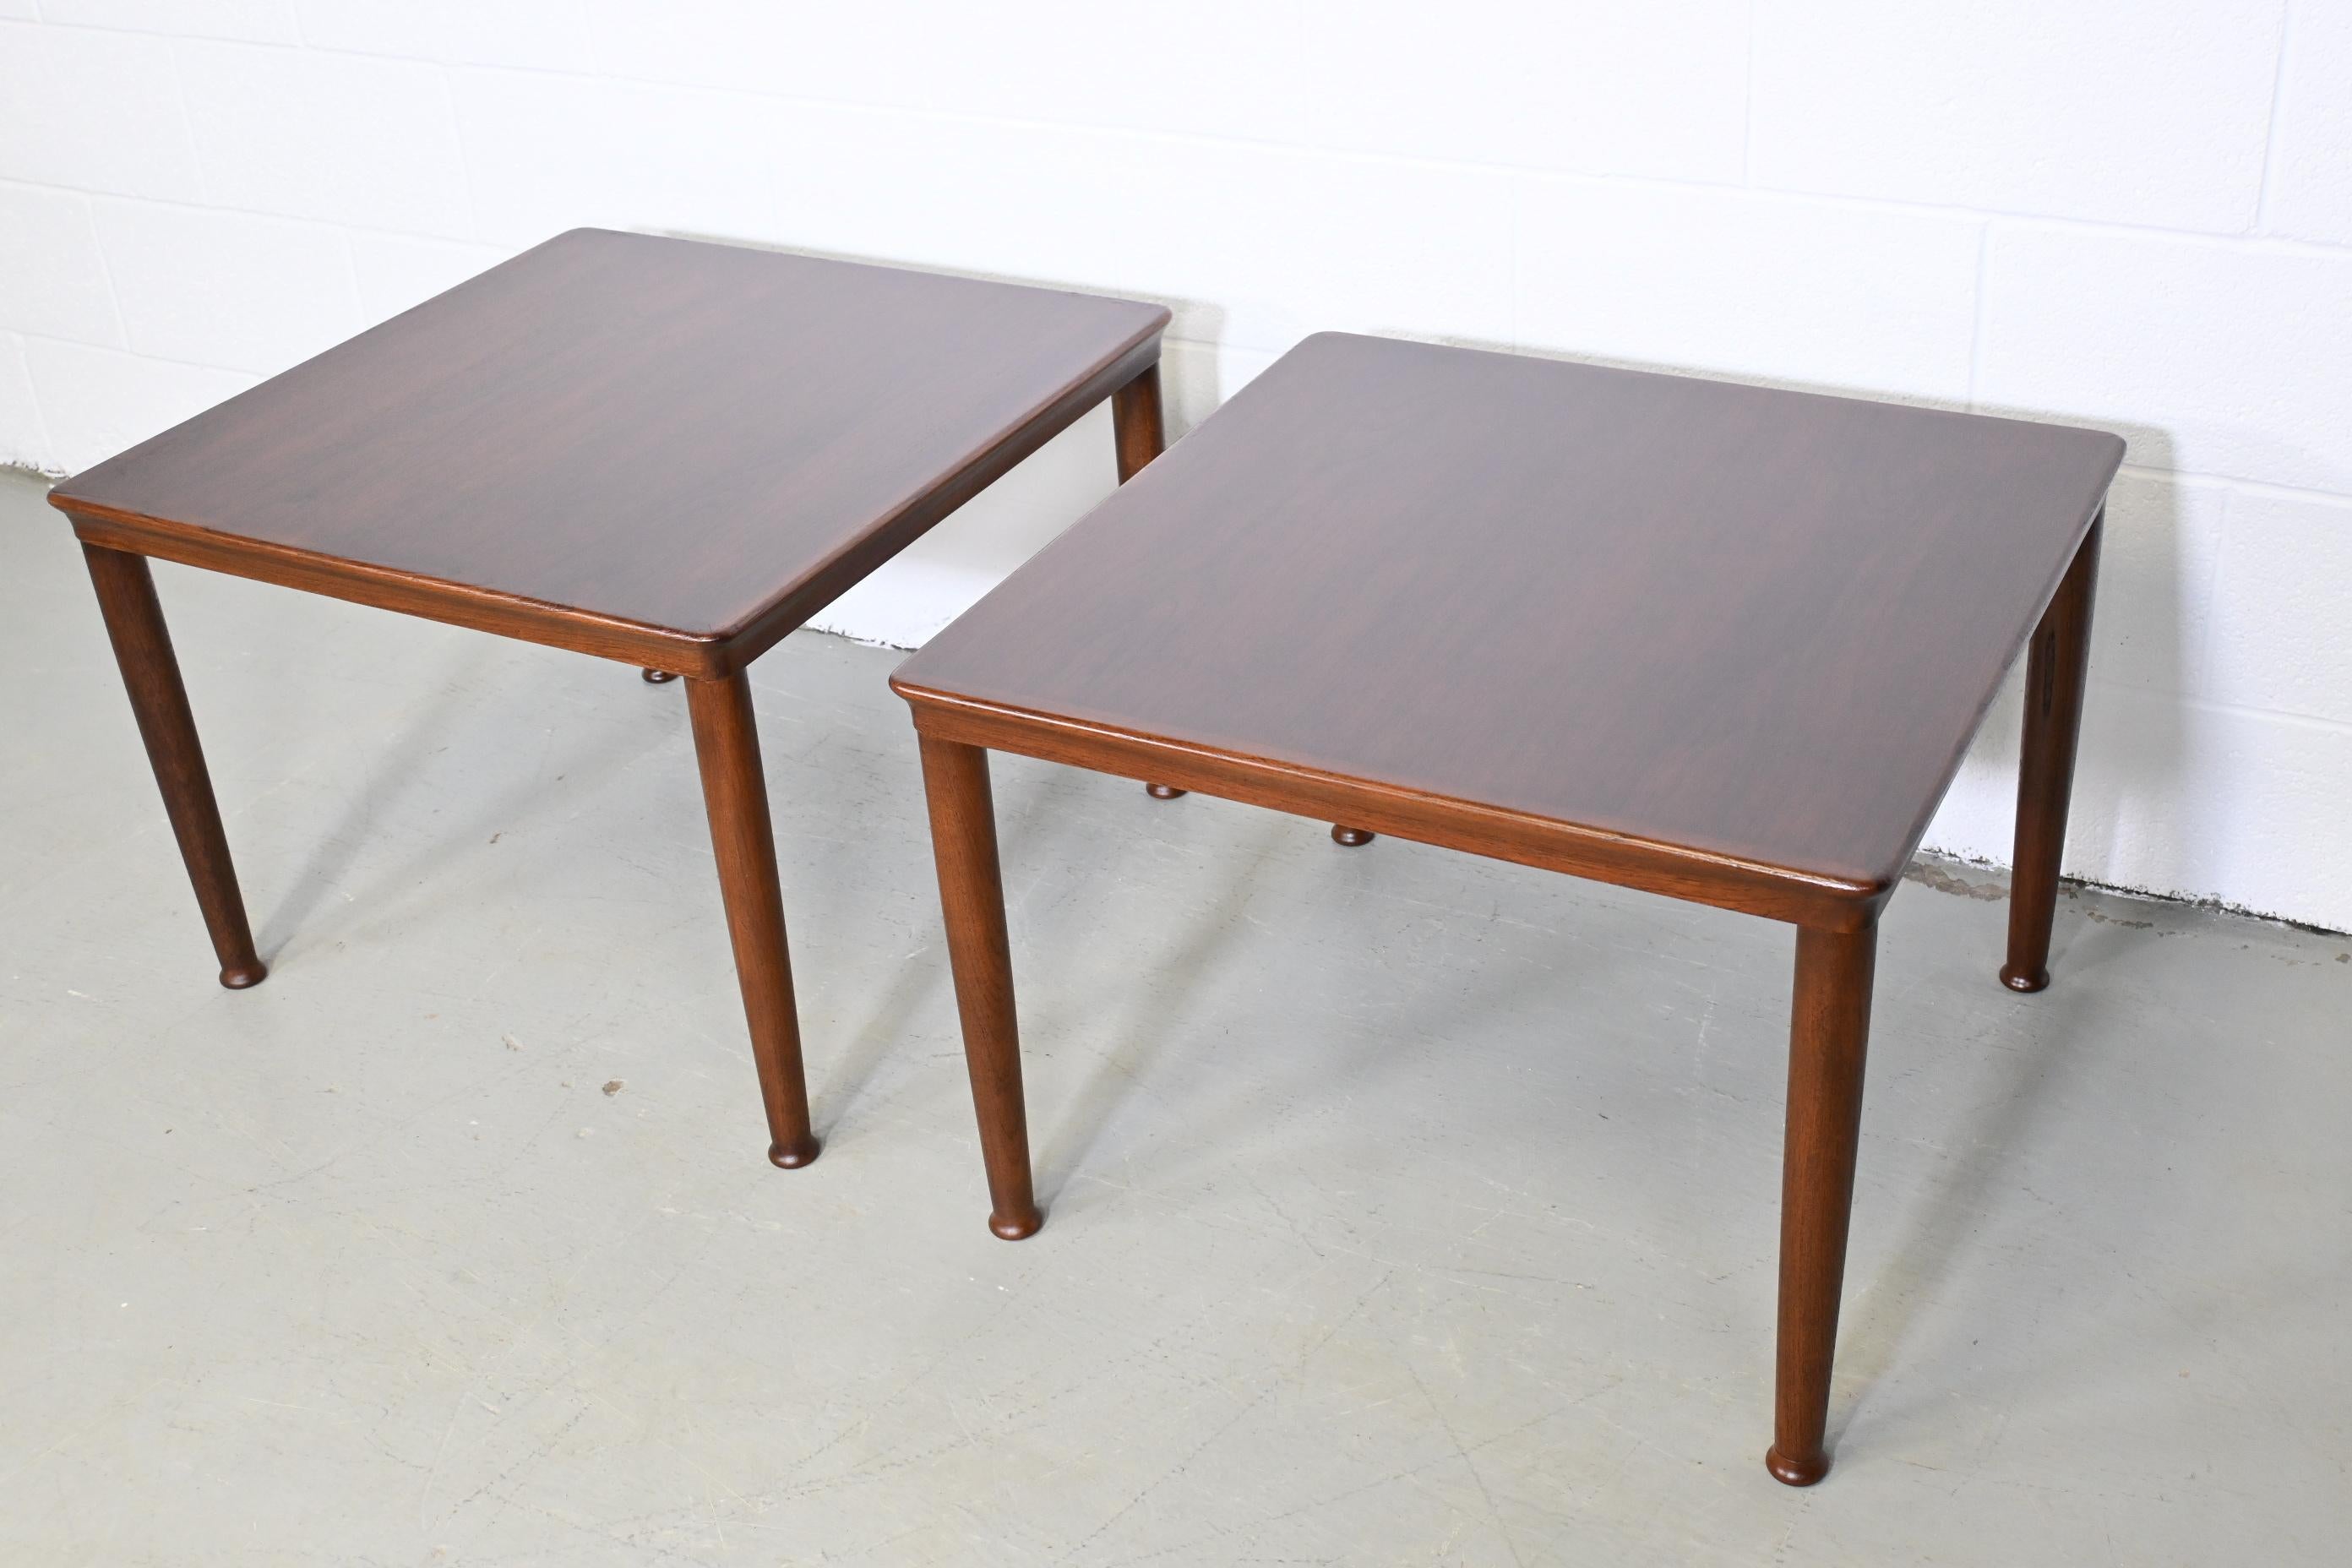 Lacquered Danish Modern Vejle Stole Mobelfabrik Teak Side Tables, a Pair